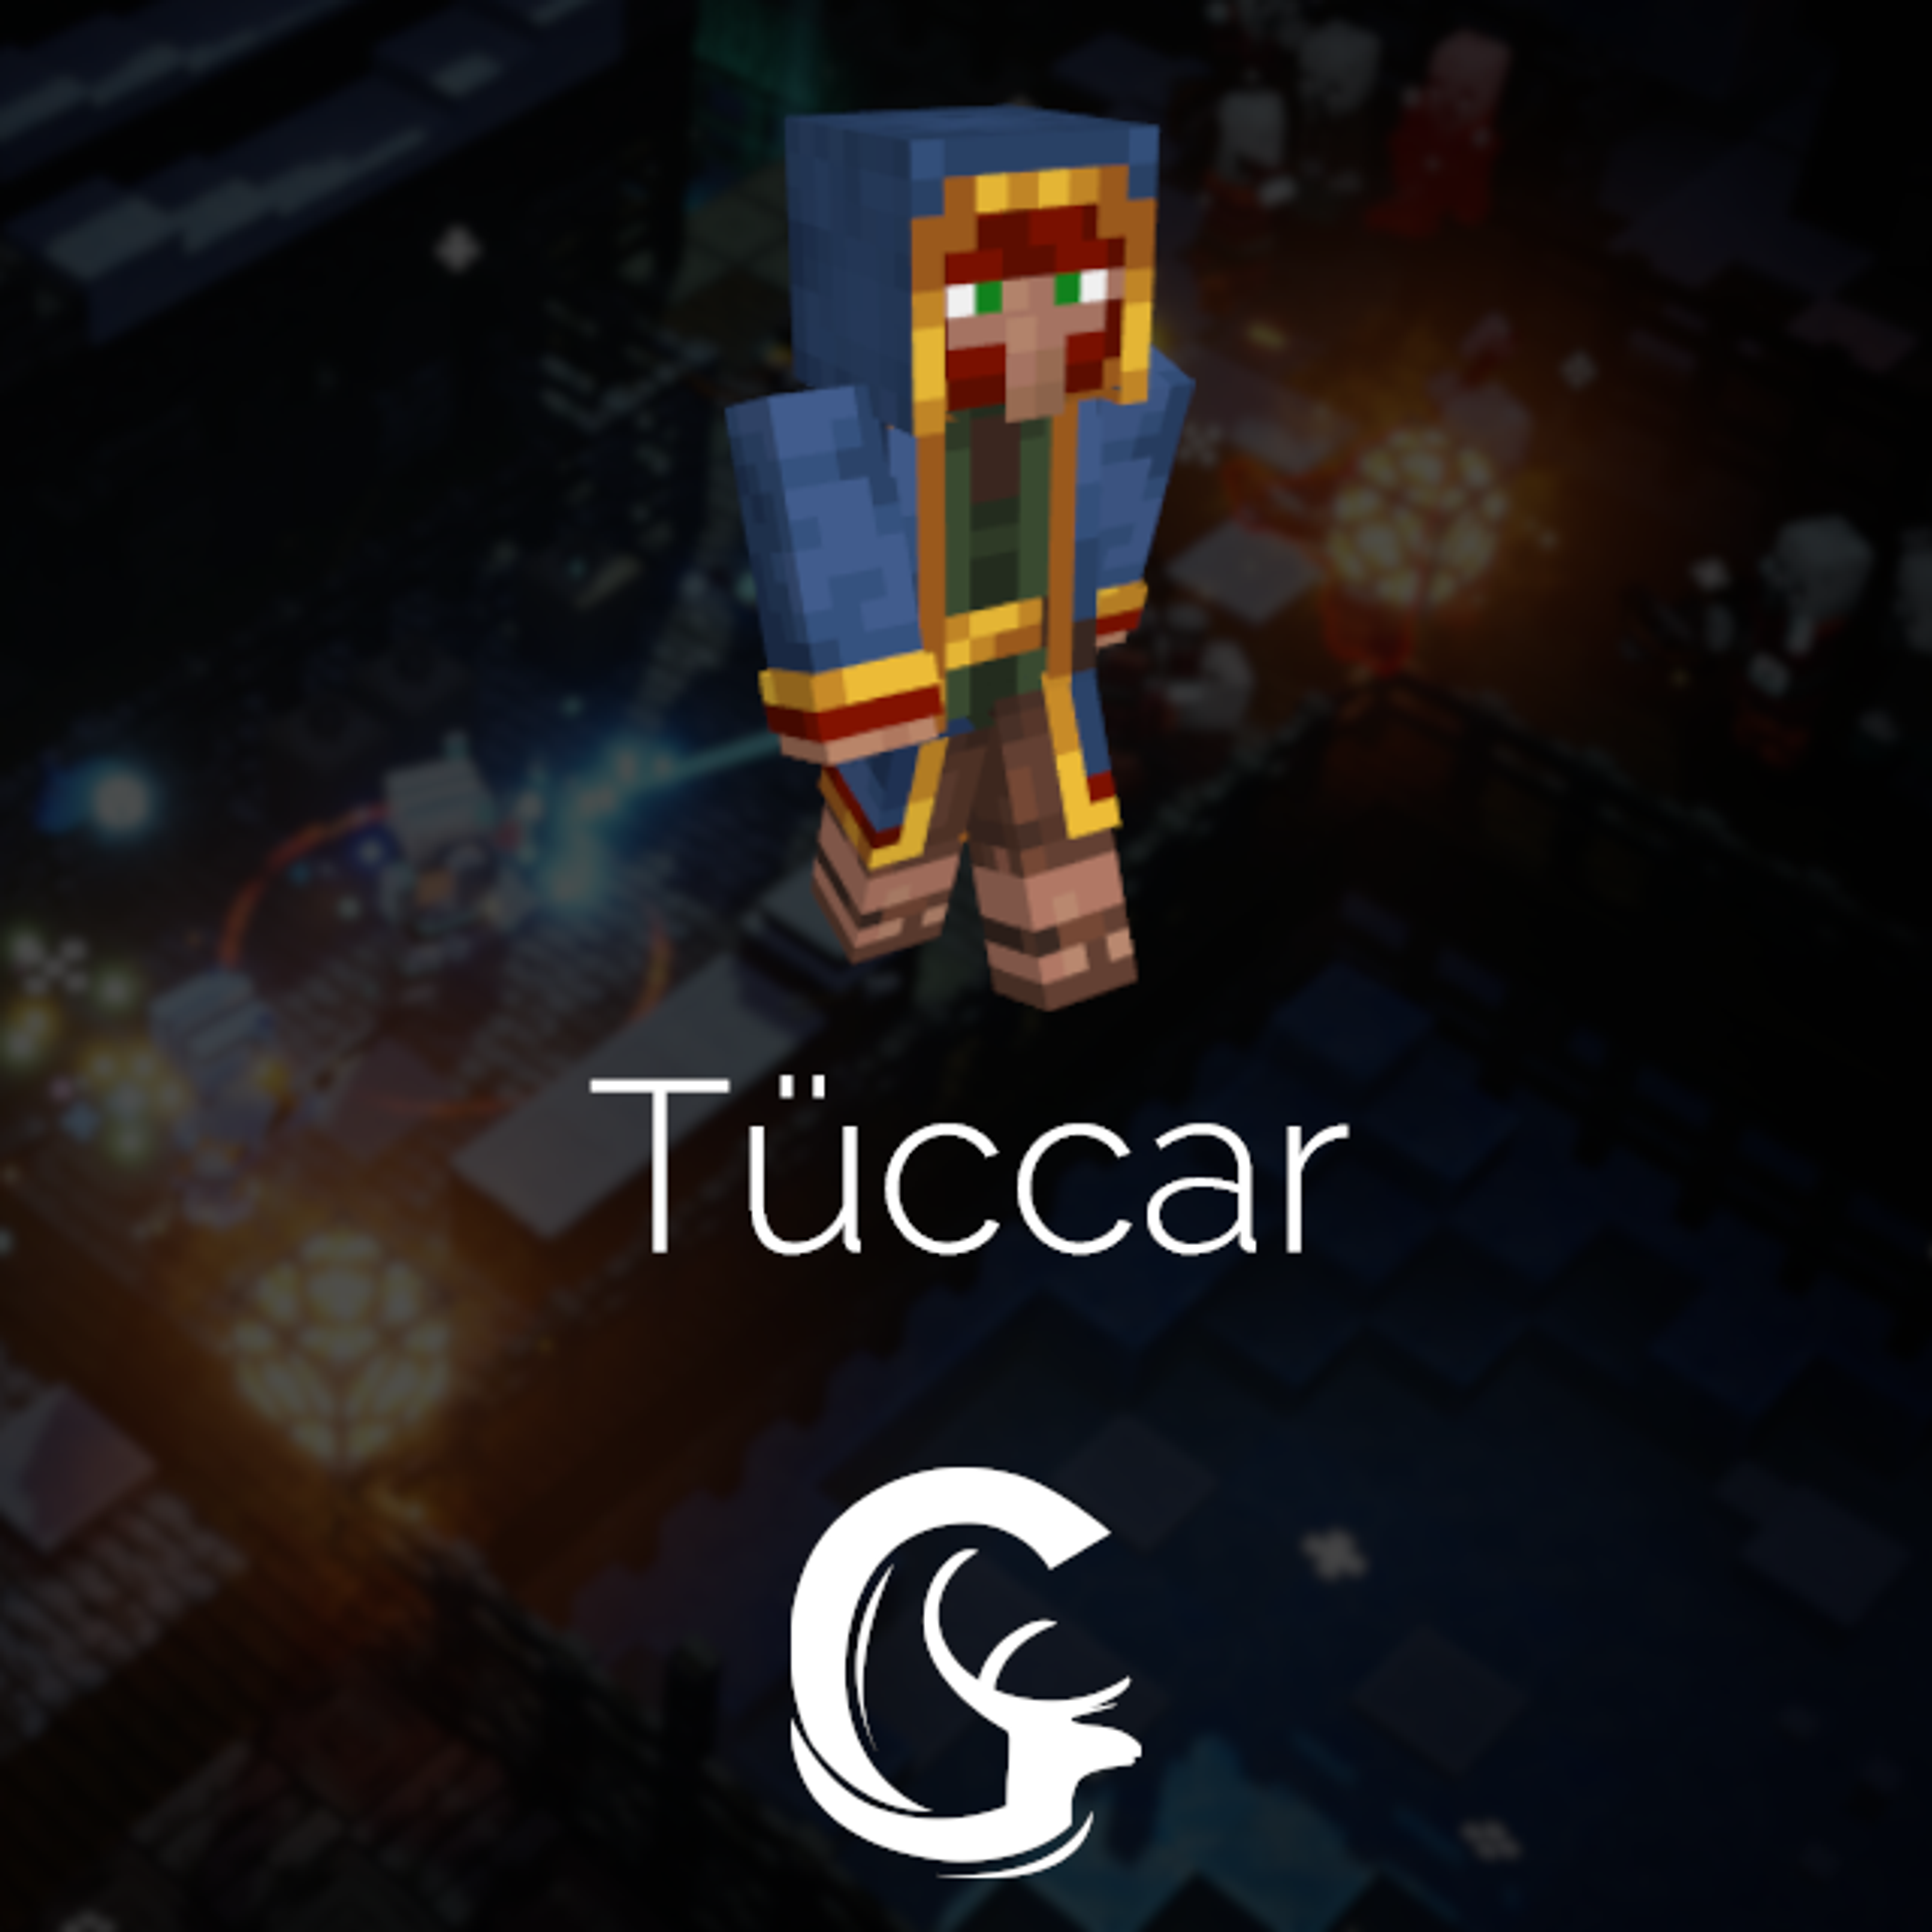 Tuccar